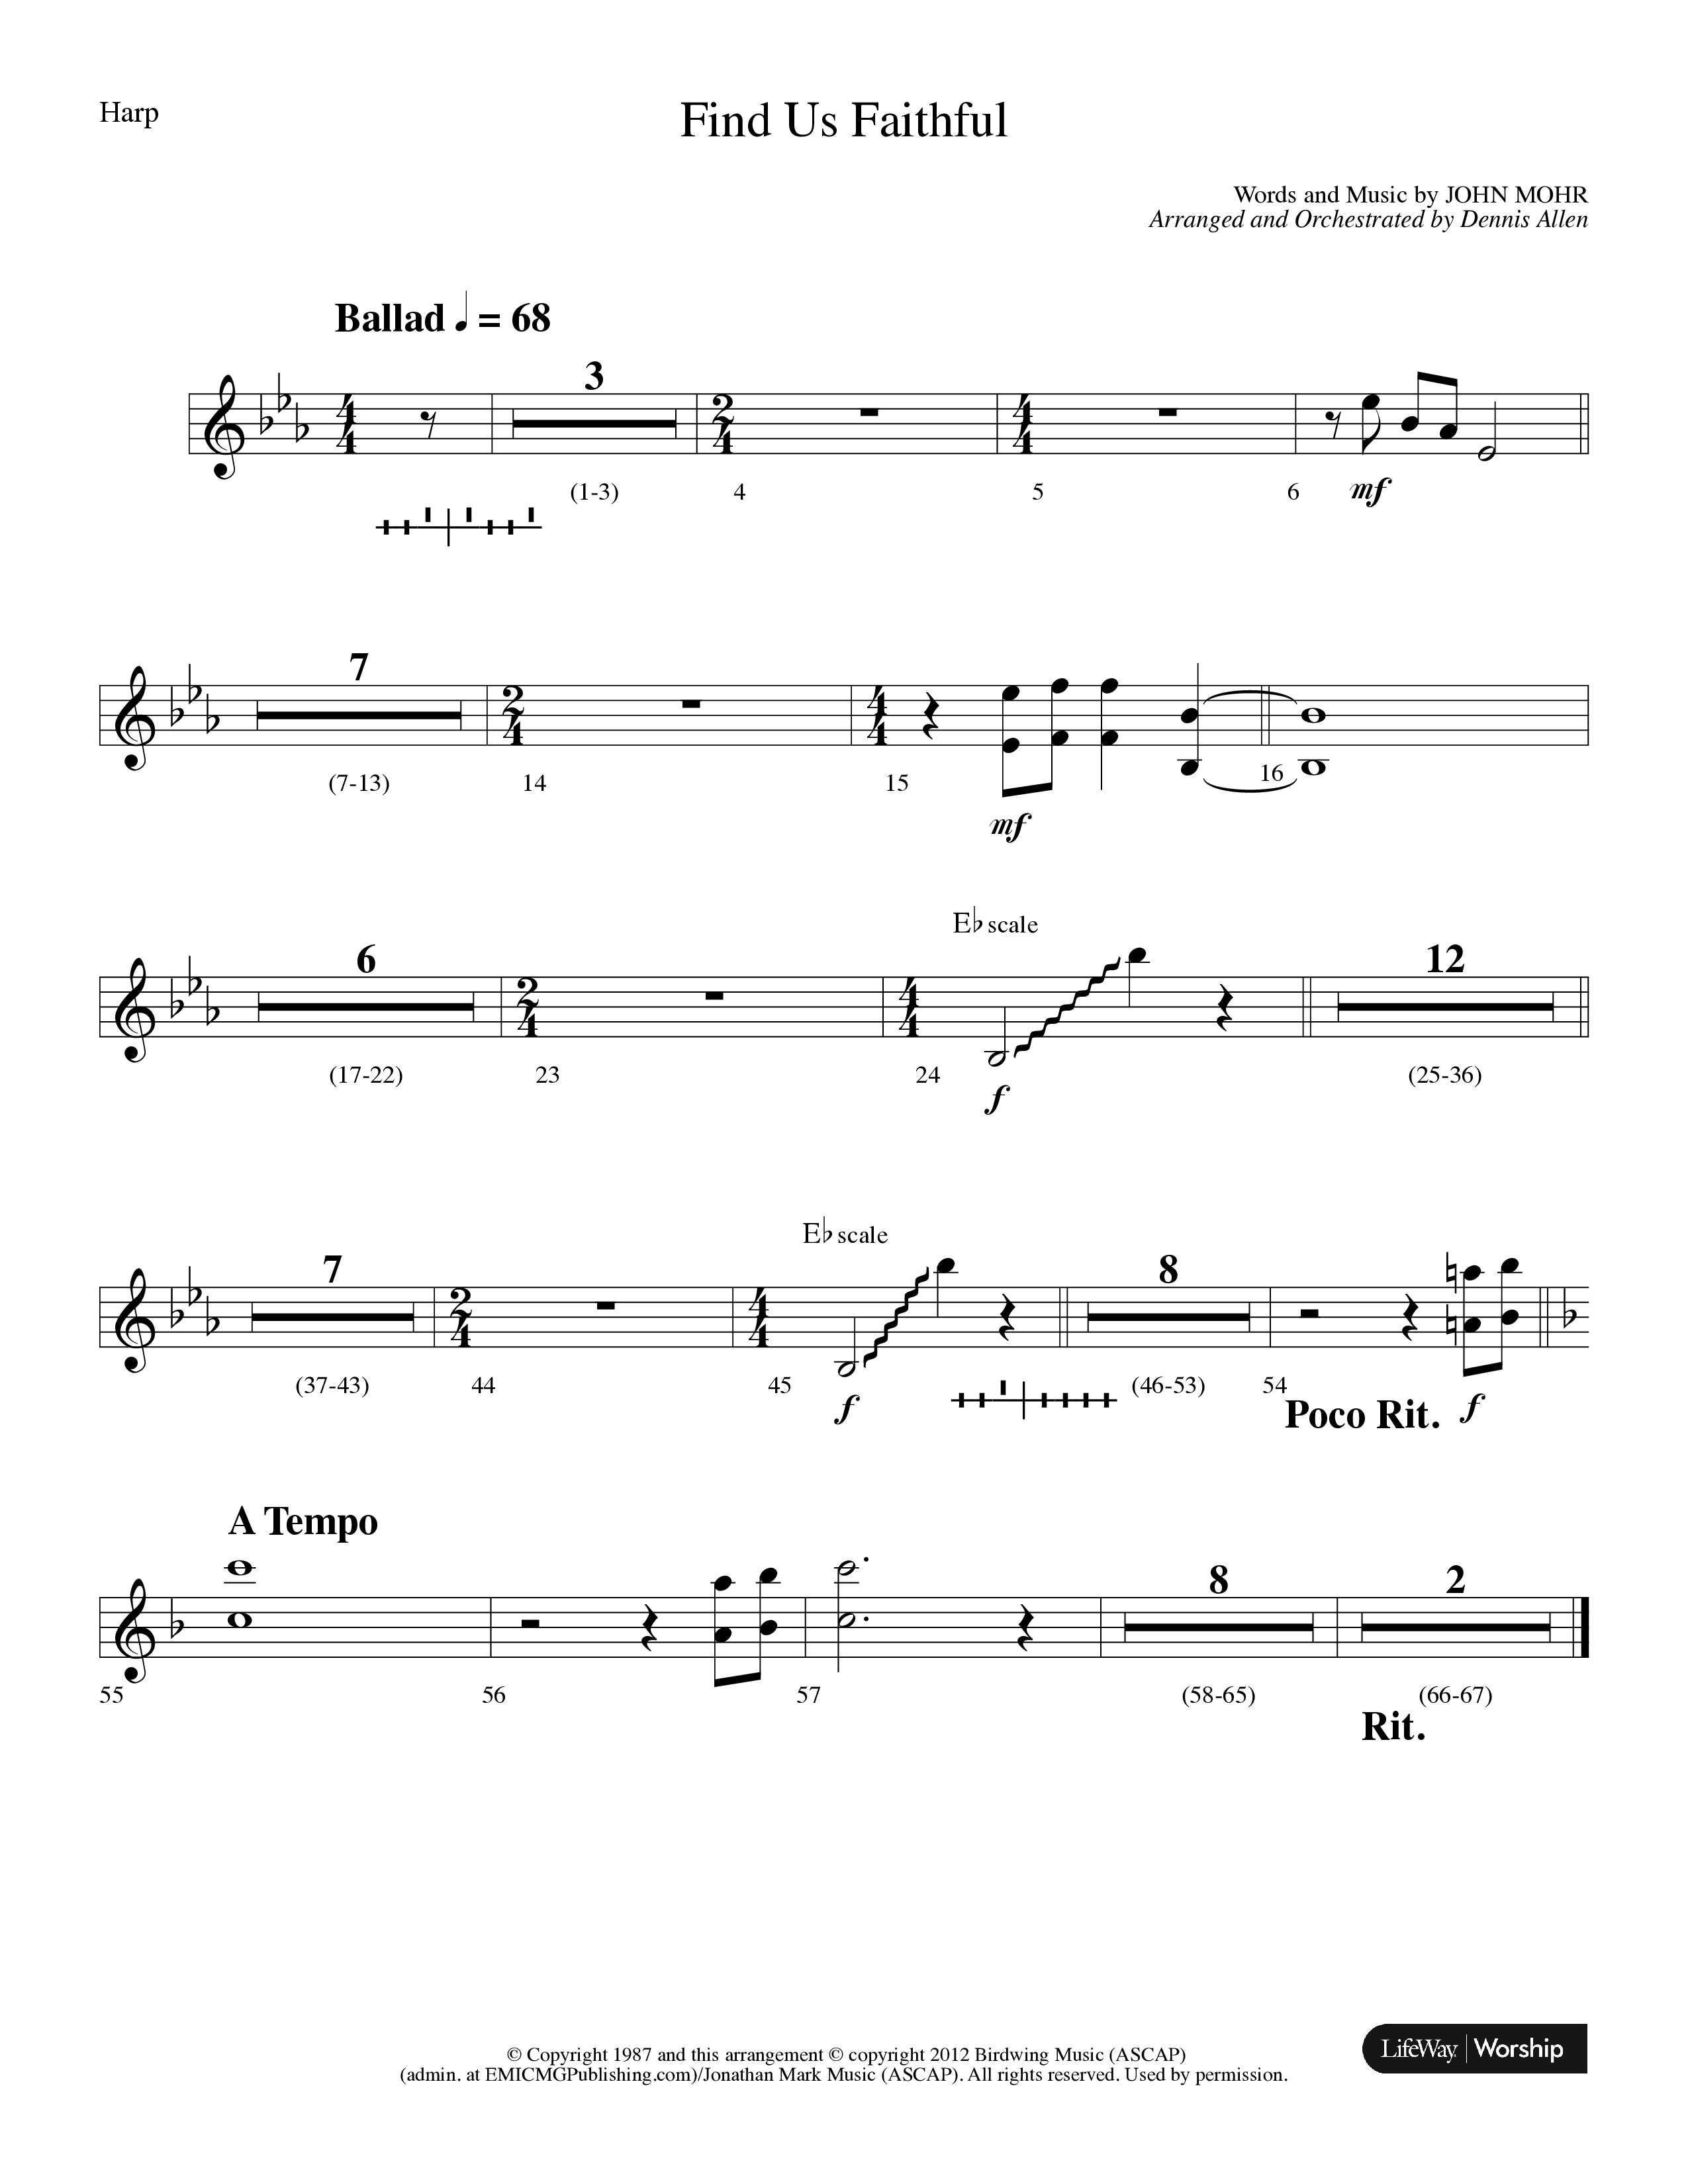 Find Us Faithful (Choral Anthem SATB) Harp (Lifeway Choral / Arr. Dennis Allen)